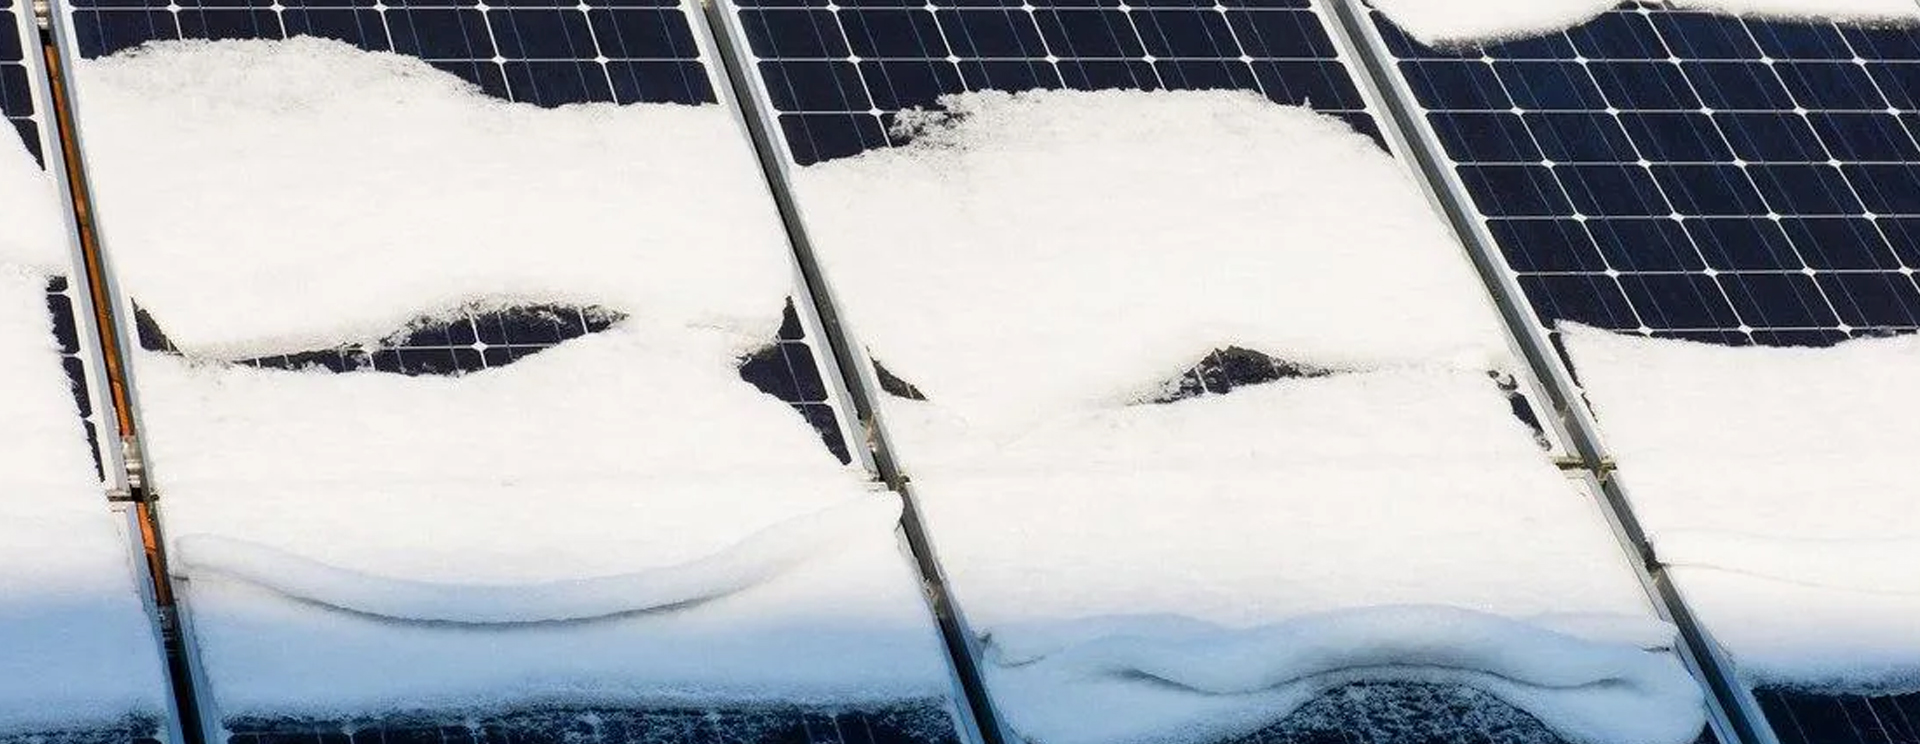 Placas solares con nieve